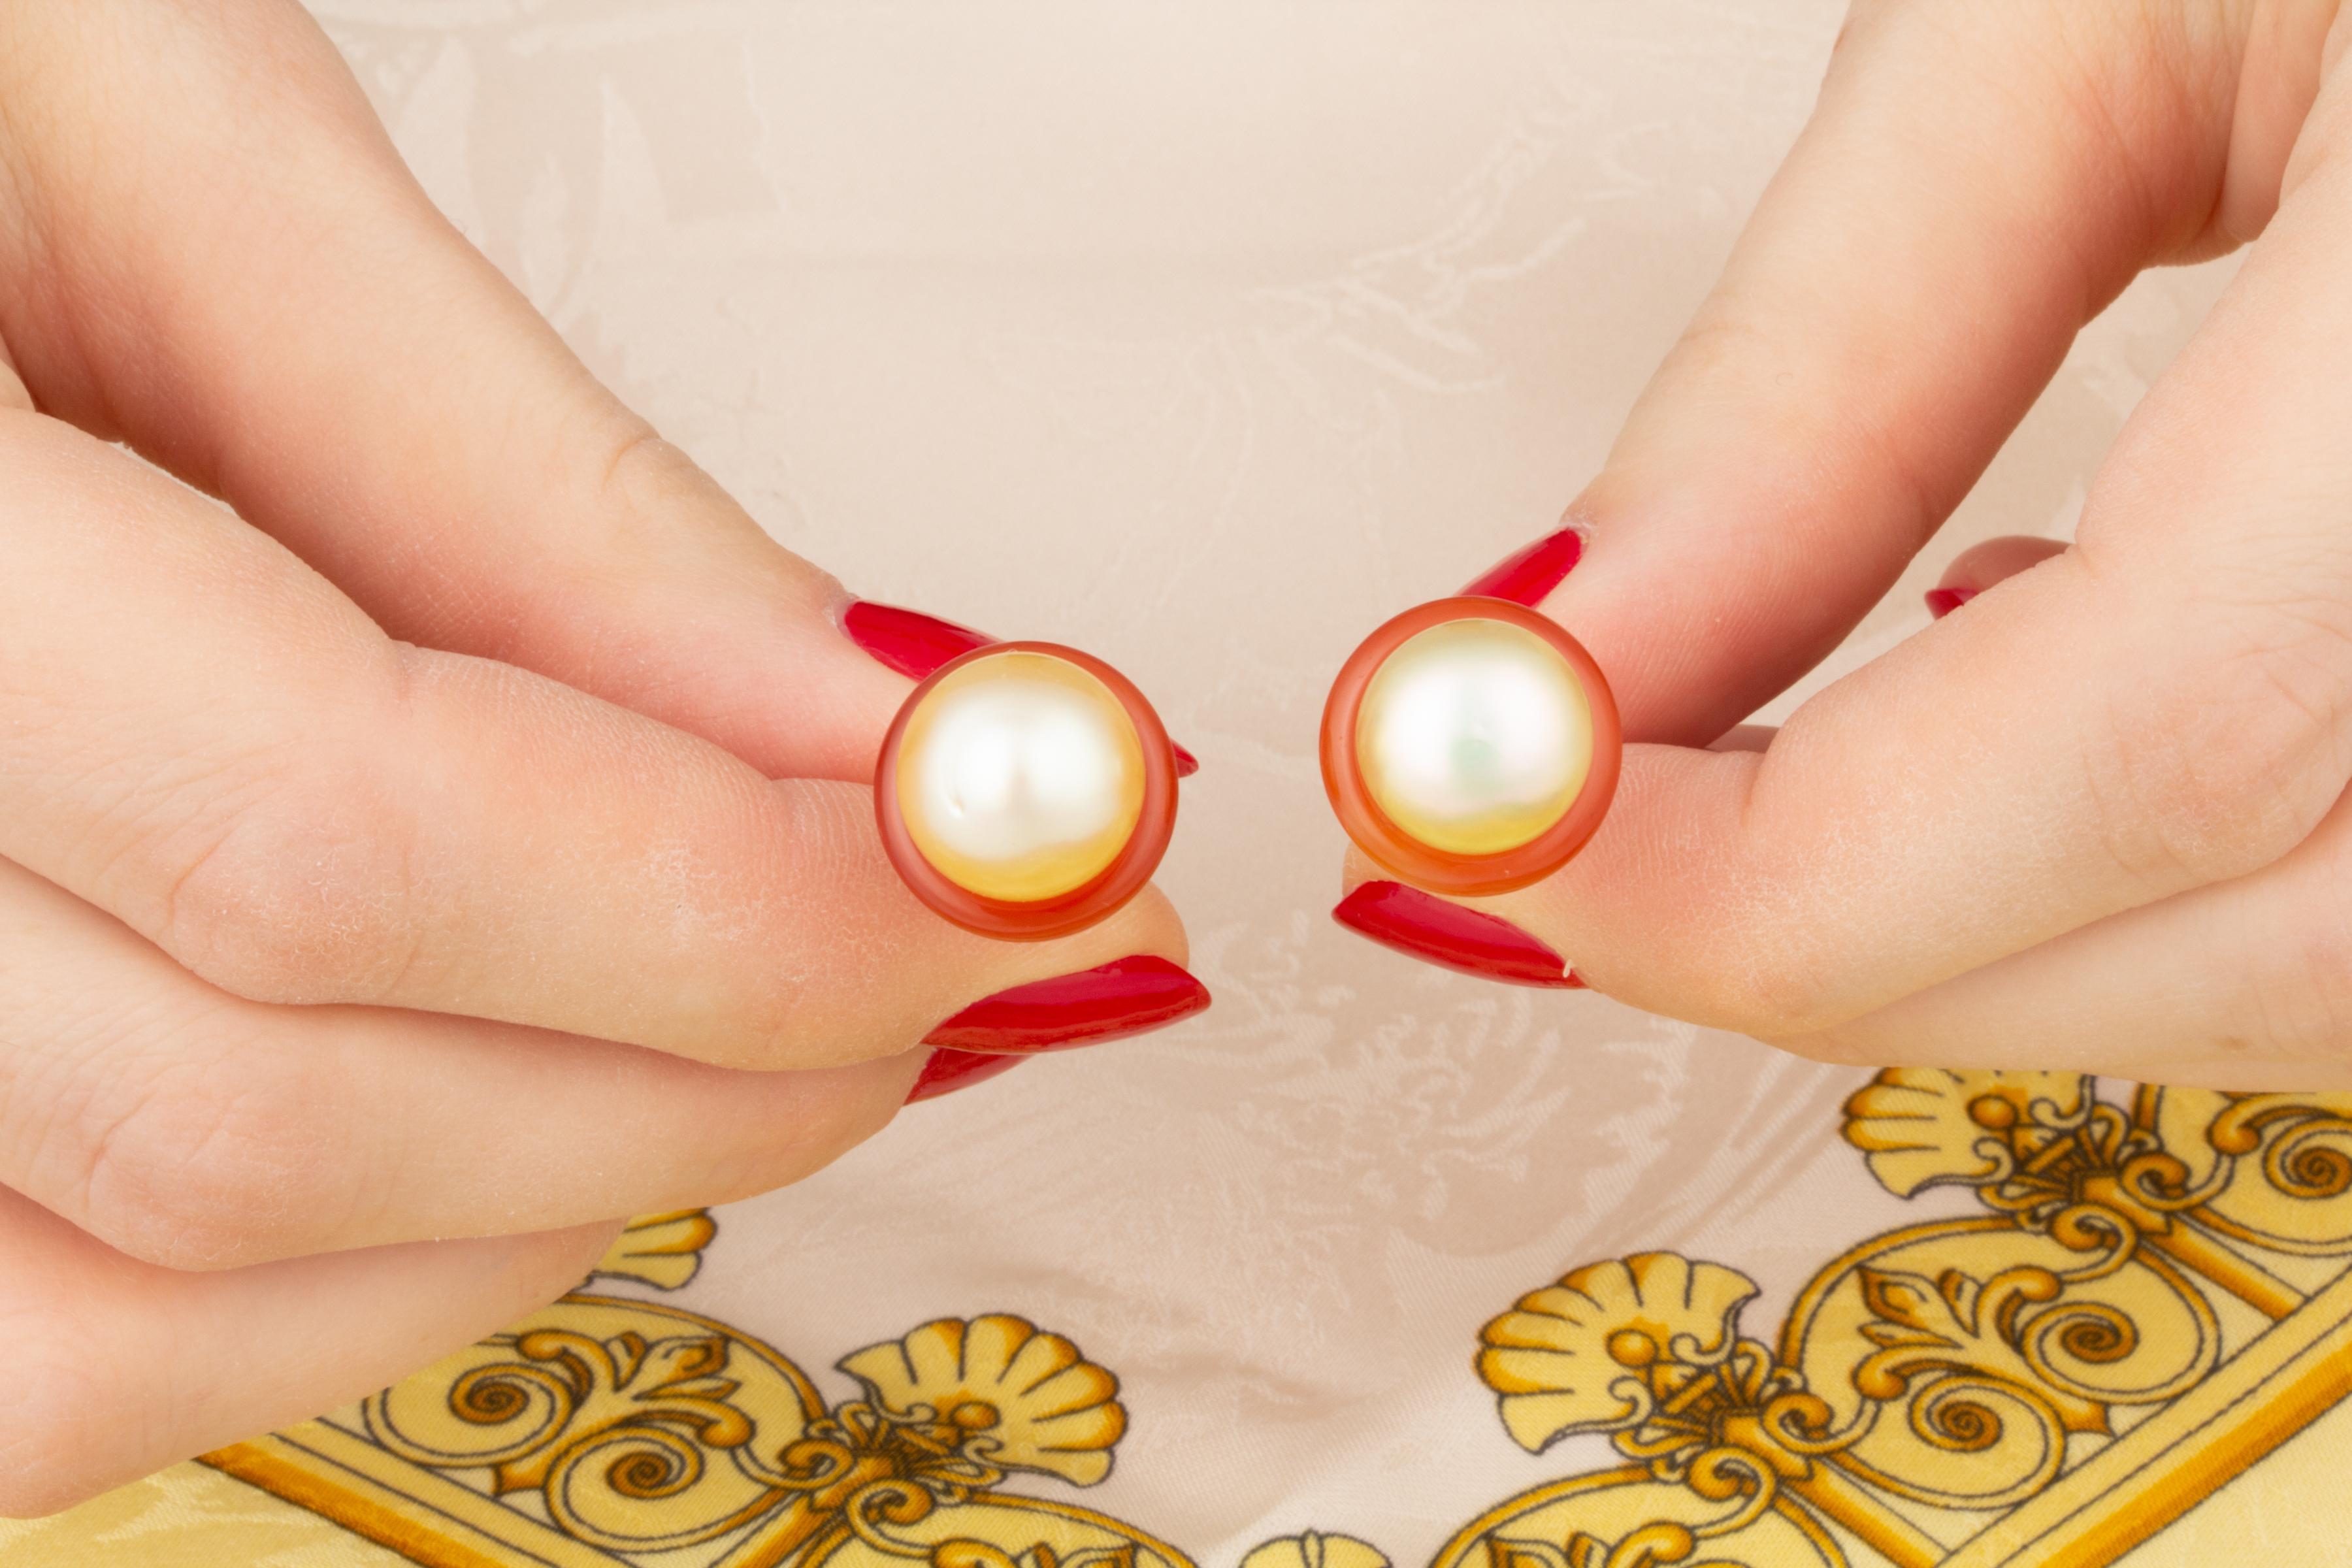 Les boutons de manchette pour femme comportent deux perles brillantes de 11 mm de diamètre. Ils sont entourés d'une couronne de jadéite taillée sur mesure. 
Toutes nos perles ne sont pas traitées : leur couleur naturelle et leur lustre élevé n'ont